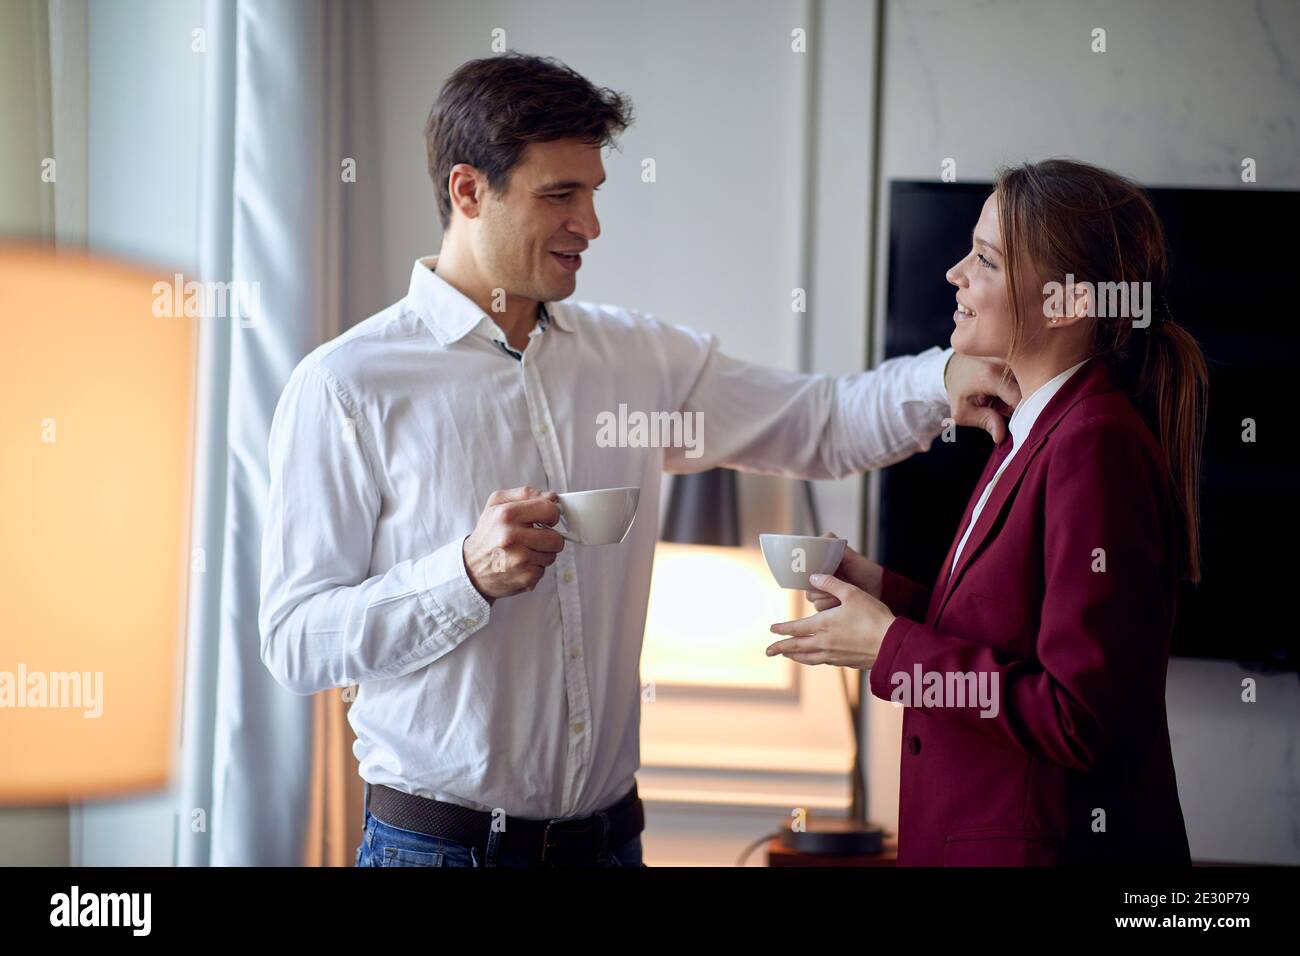 Un jeune couple qui profite d'un café et de moments ensemble à l'hôtel lors de son voyage d'affaires le matin d'une belle journée. Hôtel, affaires, personnes Banque D'Images